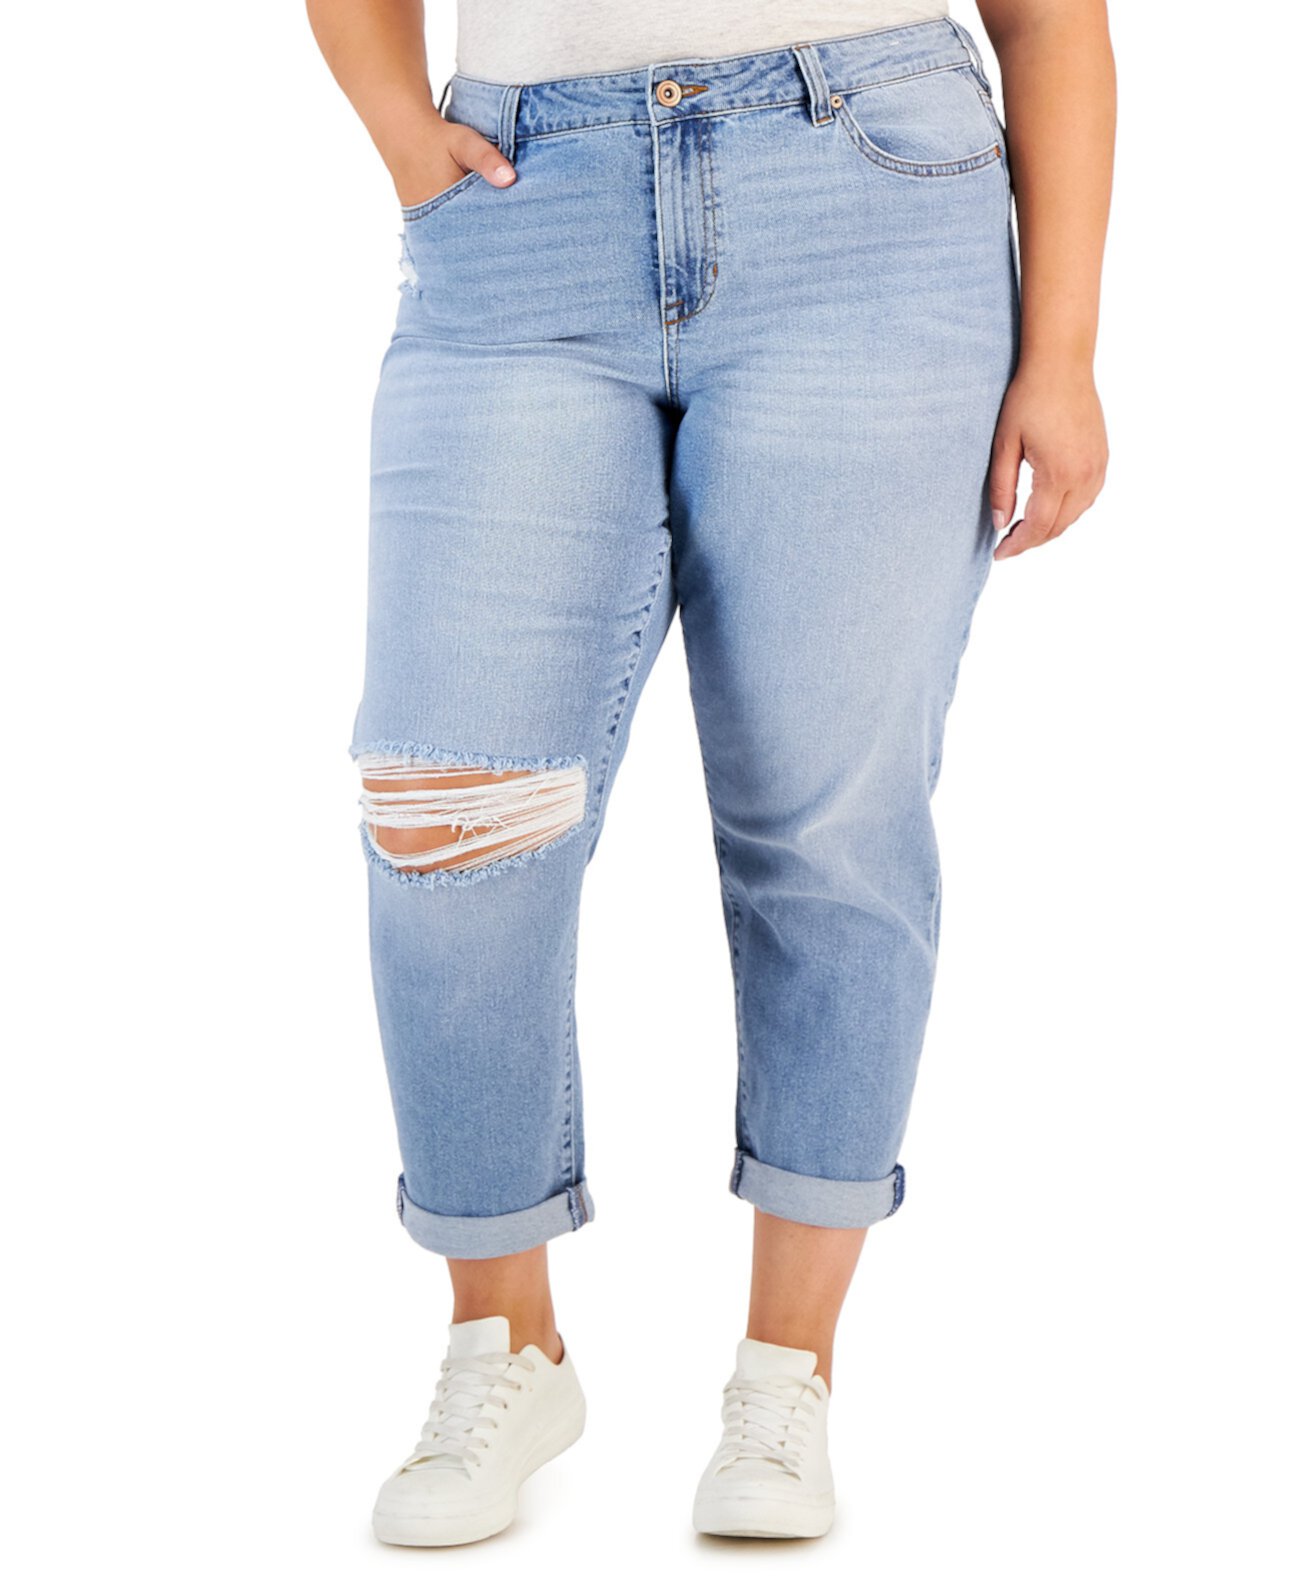 Модные джинсы Girlfriend больших размеров с манжетами Celebrity Pink